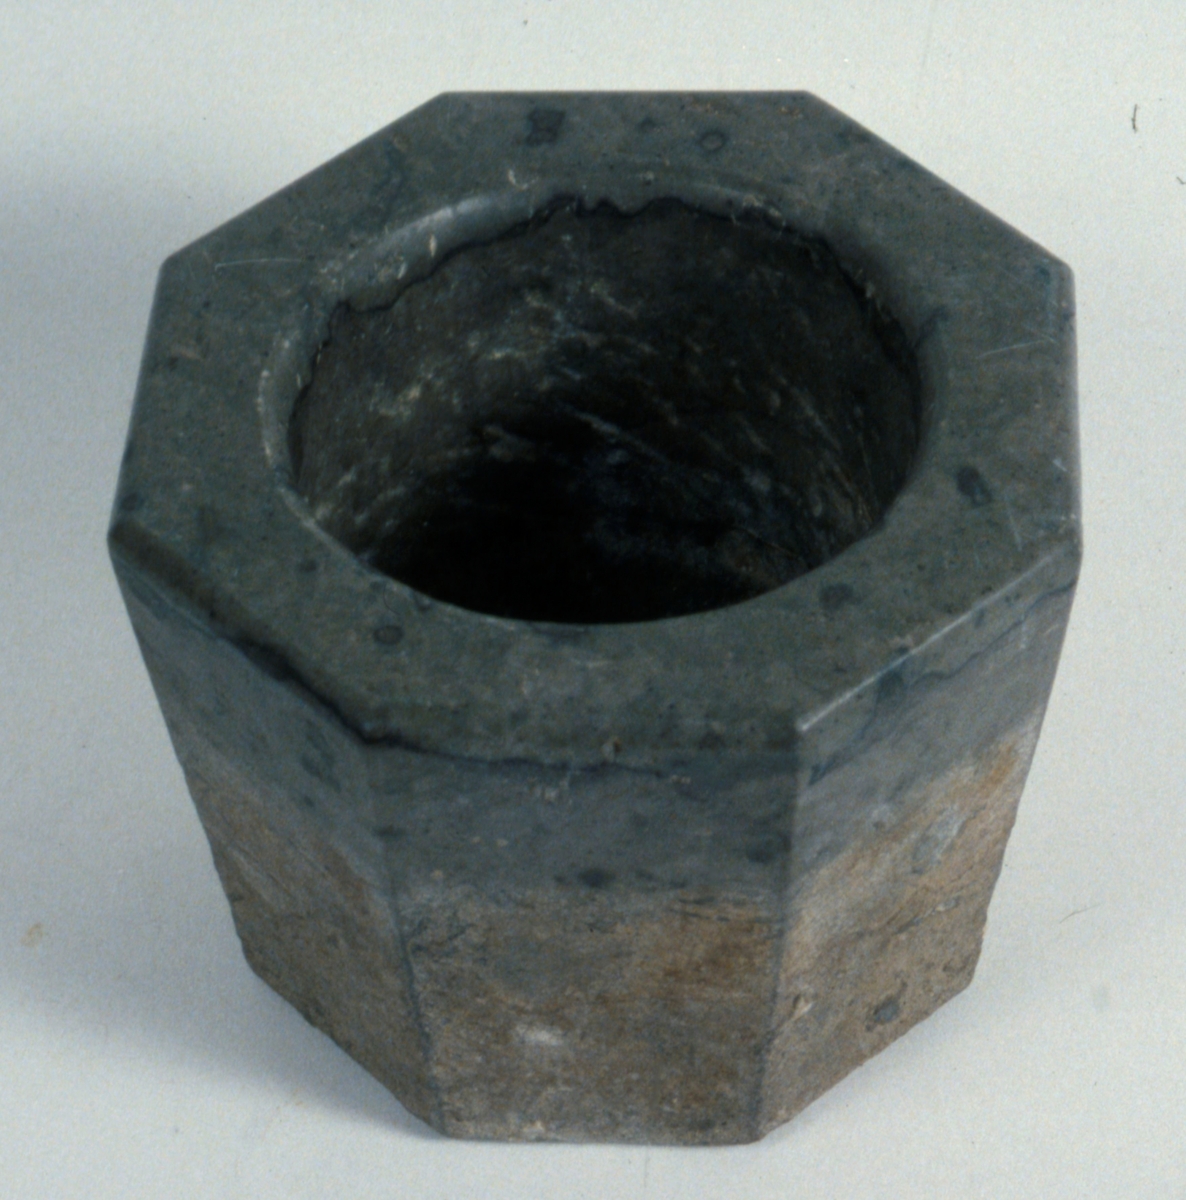 Åttakantig mortel av kalksten.

Neg.nr. 1987-04